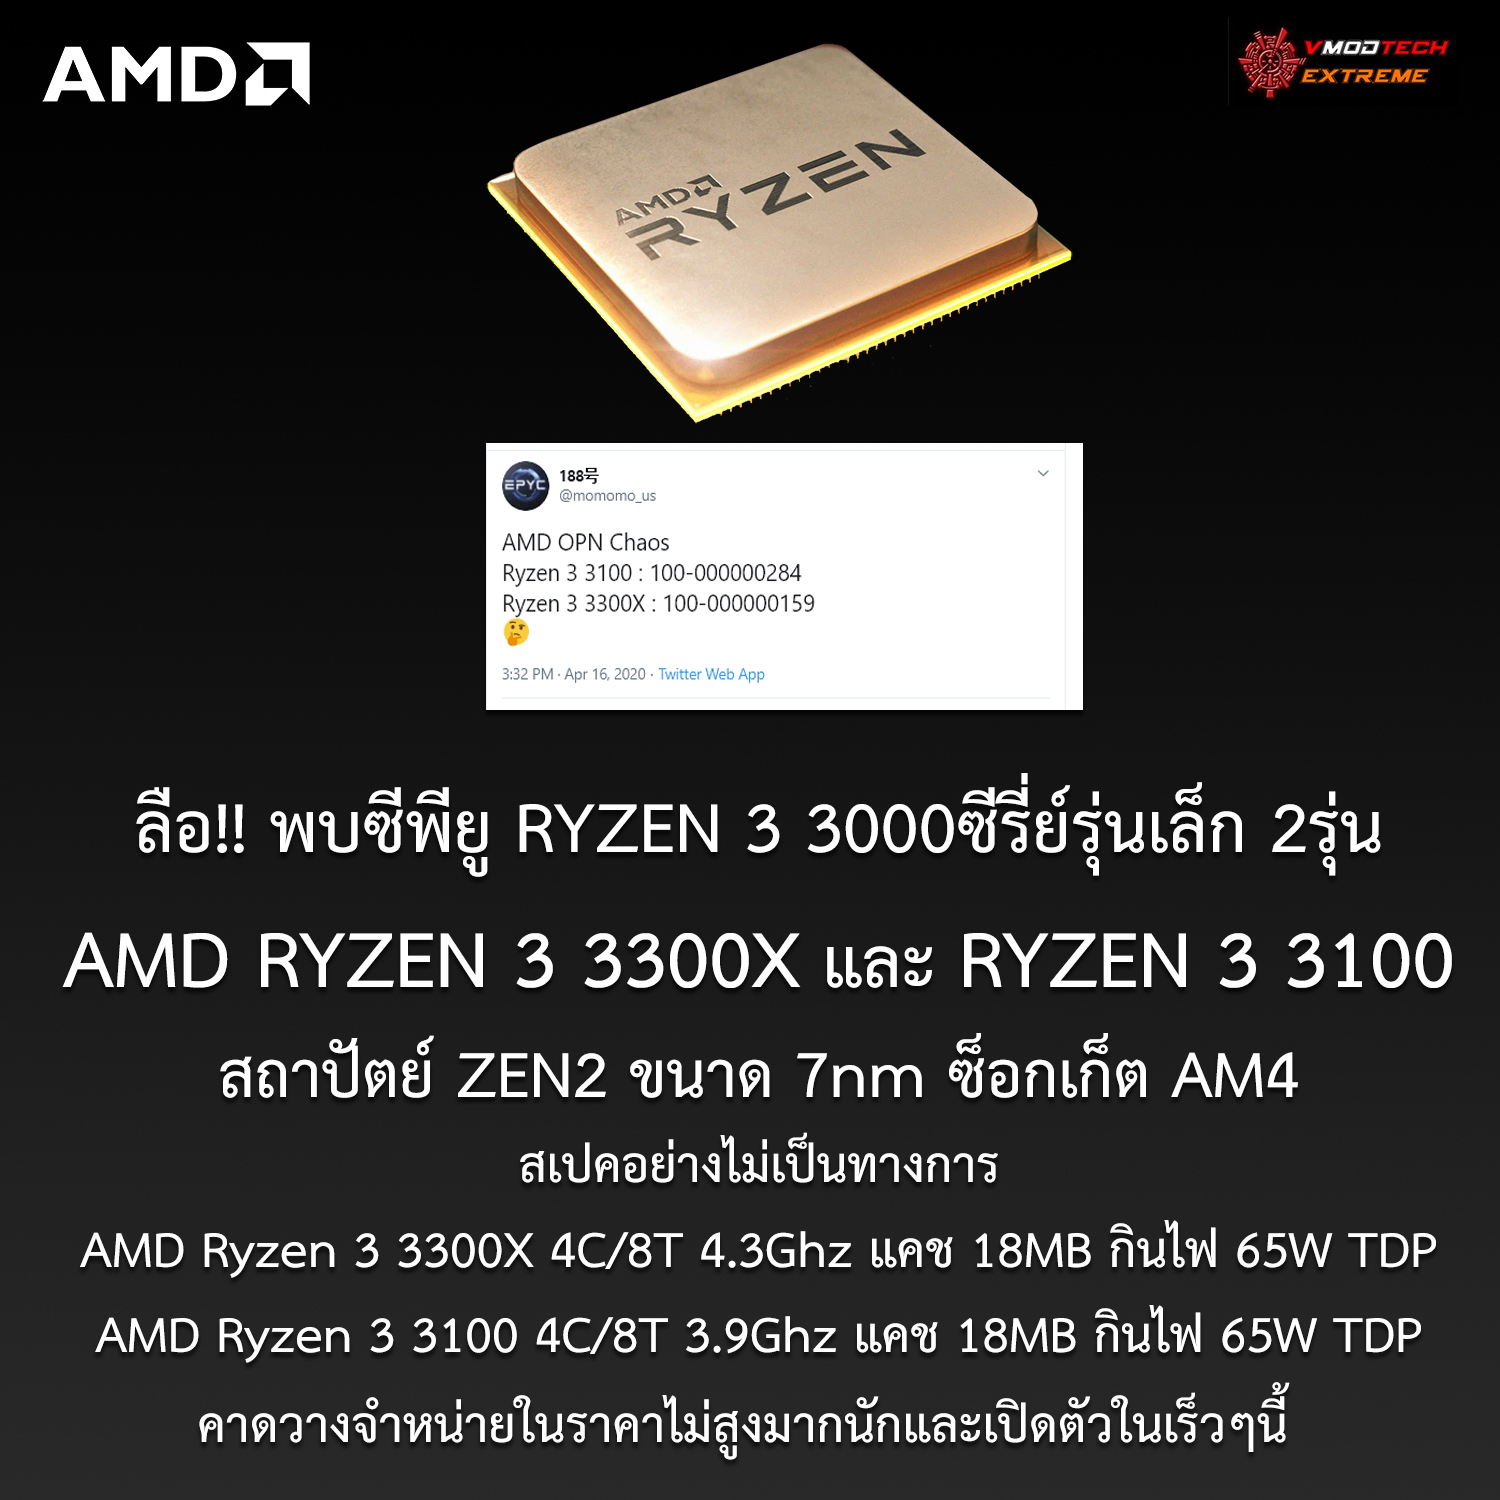 amd ryzen 3 3300x ryzen3 3100 zen2 ลือ!! พบซีพียู AMD Ryzen 3 3300X และ Ryzen 3 3100 รุ่นเล็กสถาปัตย์ ZEN2 มีจำนวนคอร์ 4C/8T กินไฟ 65W TDP อย่างไม่เป็นทางการคาดพร้อมเปิดตัวเร็วๆนี้   